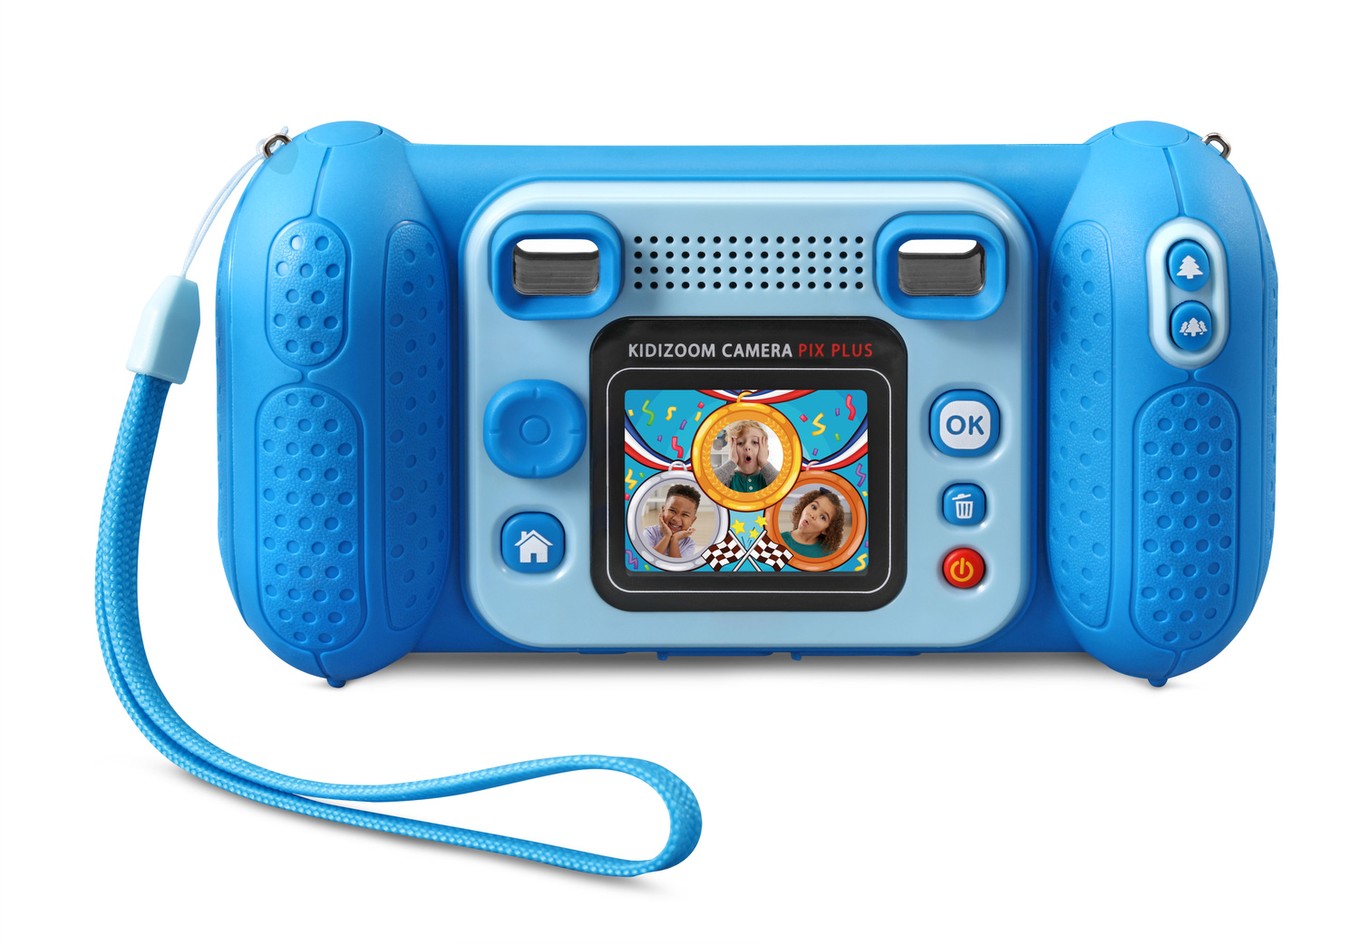 VTech Kidizoom Pix Bleu 3 año , AA, 71 mm, 203 mm, 241 mm s electrónica para niños s 10 año 